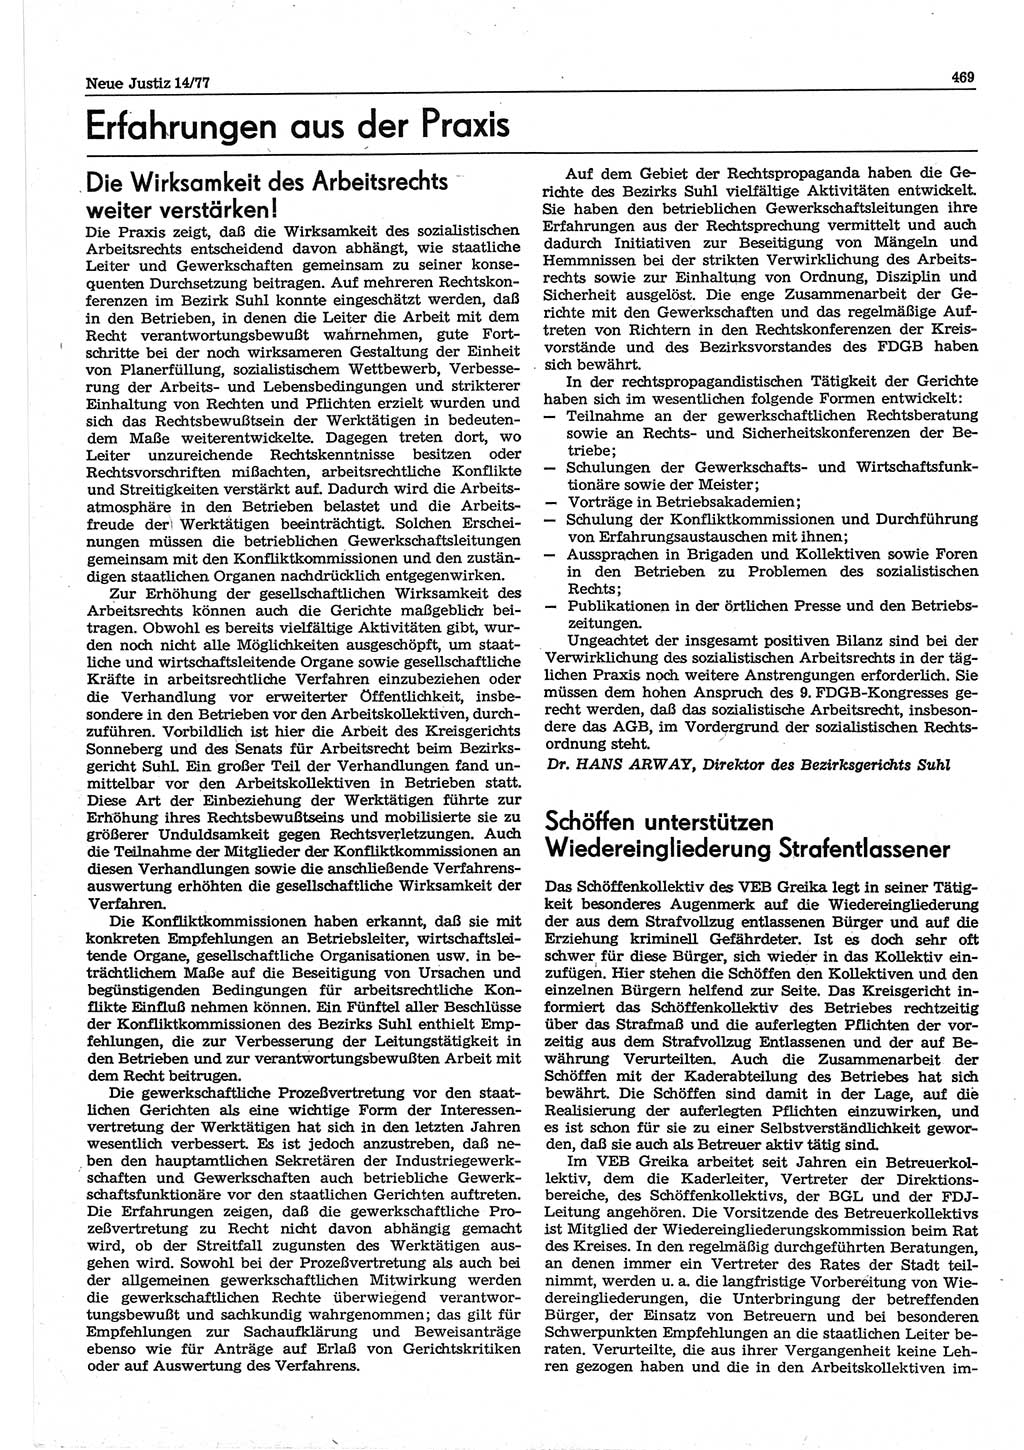 Neue Justiz (NJ), Zeitschrift für Recht und Rechtswissenschaft-Zeitschrift, sozialistisches Recht und Gesetzlichkeit, 31. Jahrgang 1977, Seite 469 (NJ DDR 1977, S. 469)